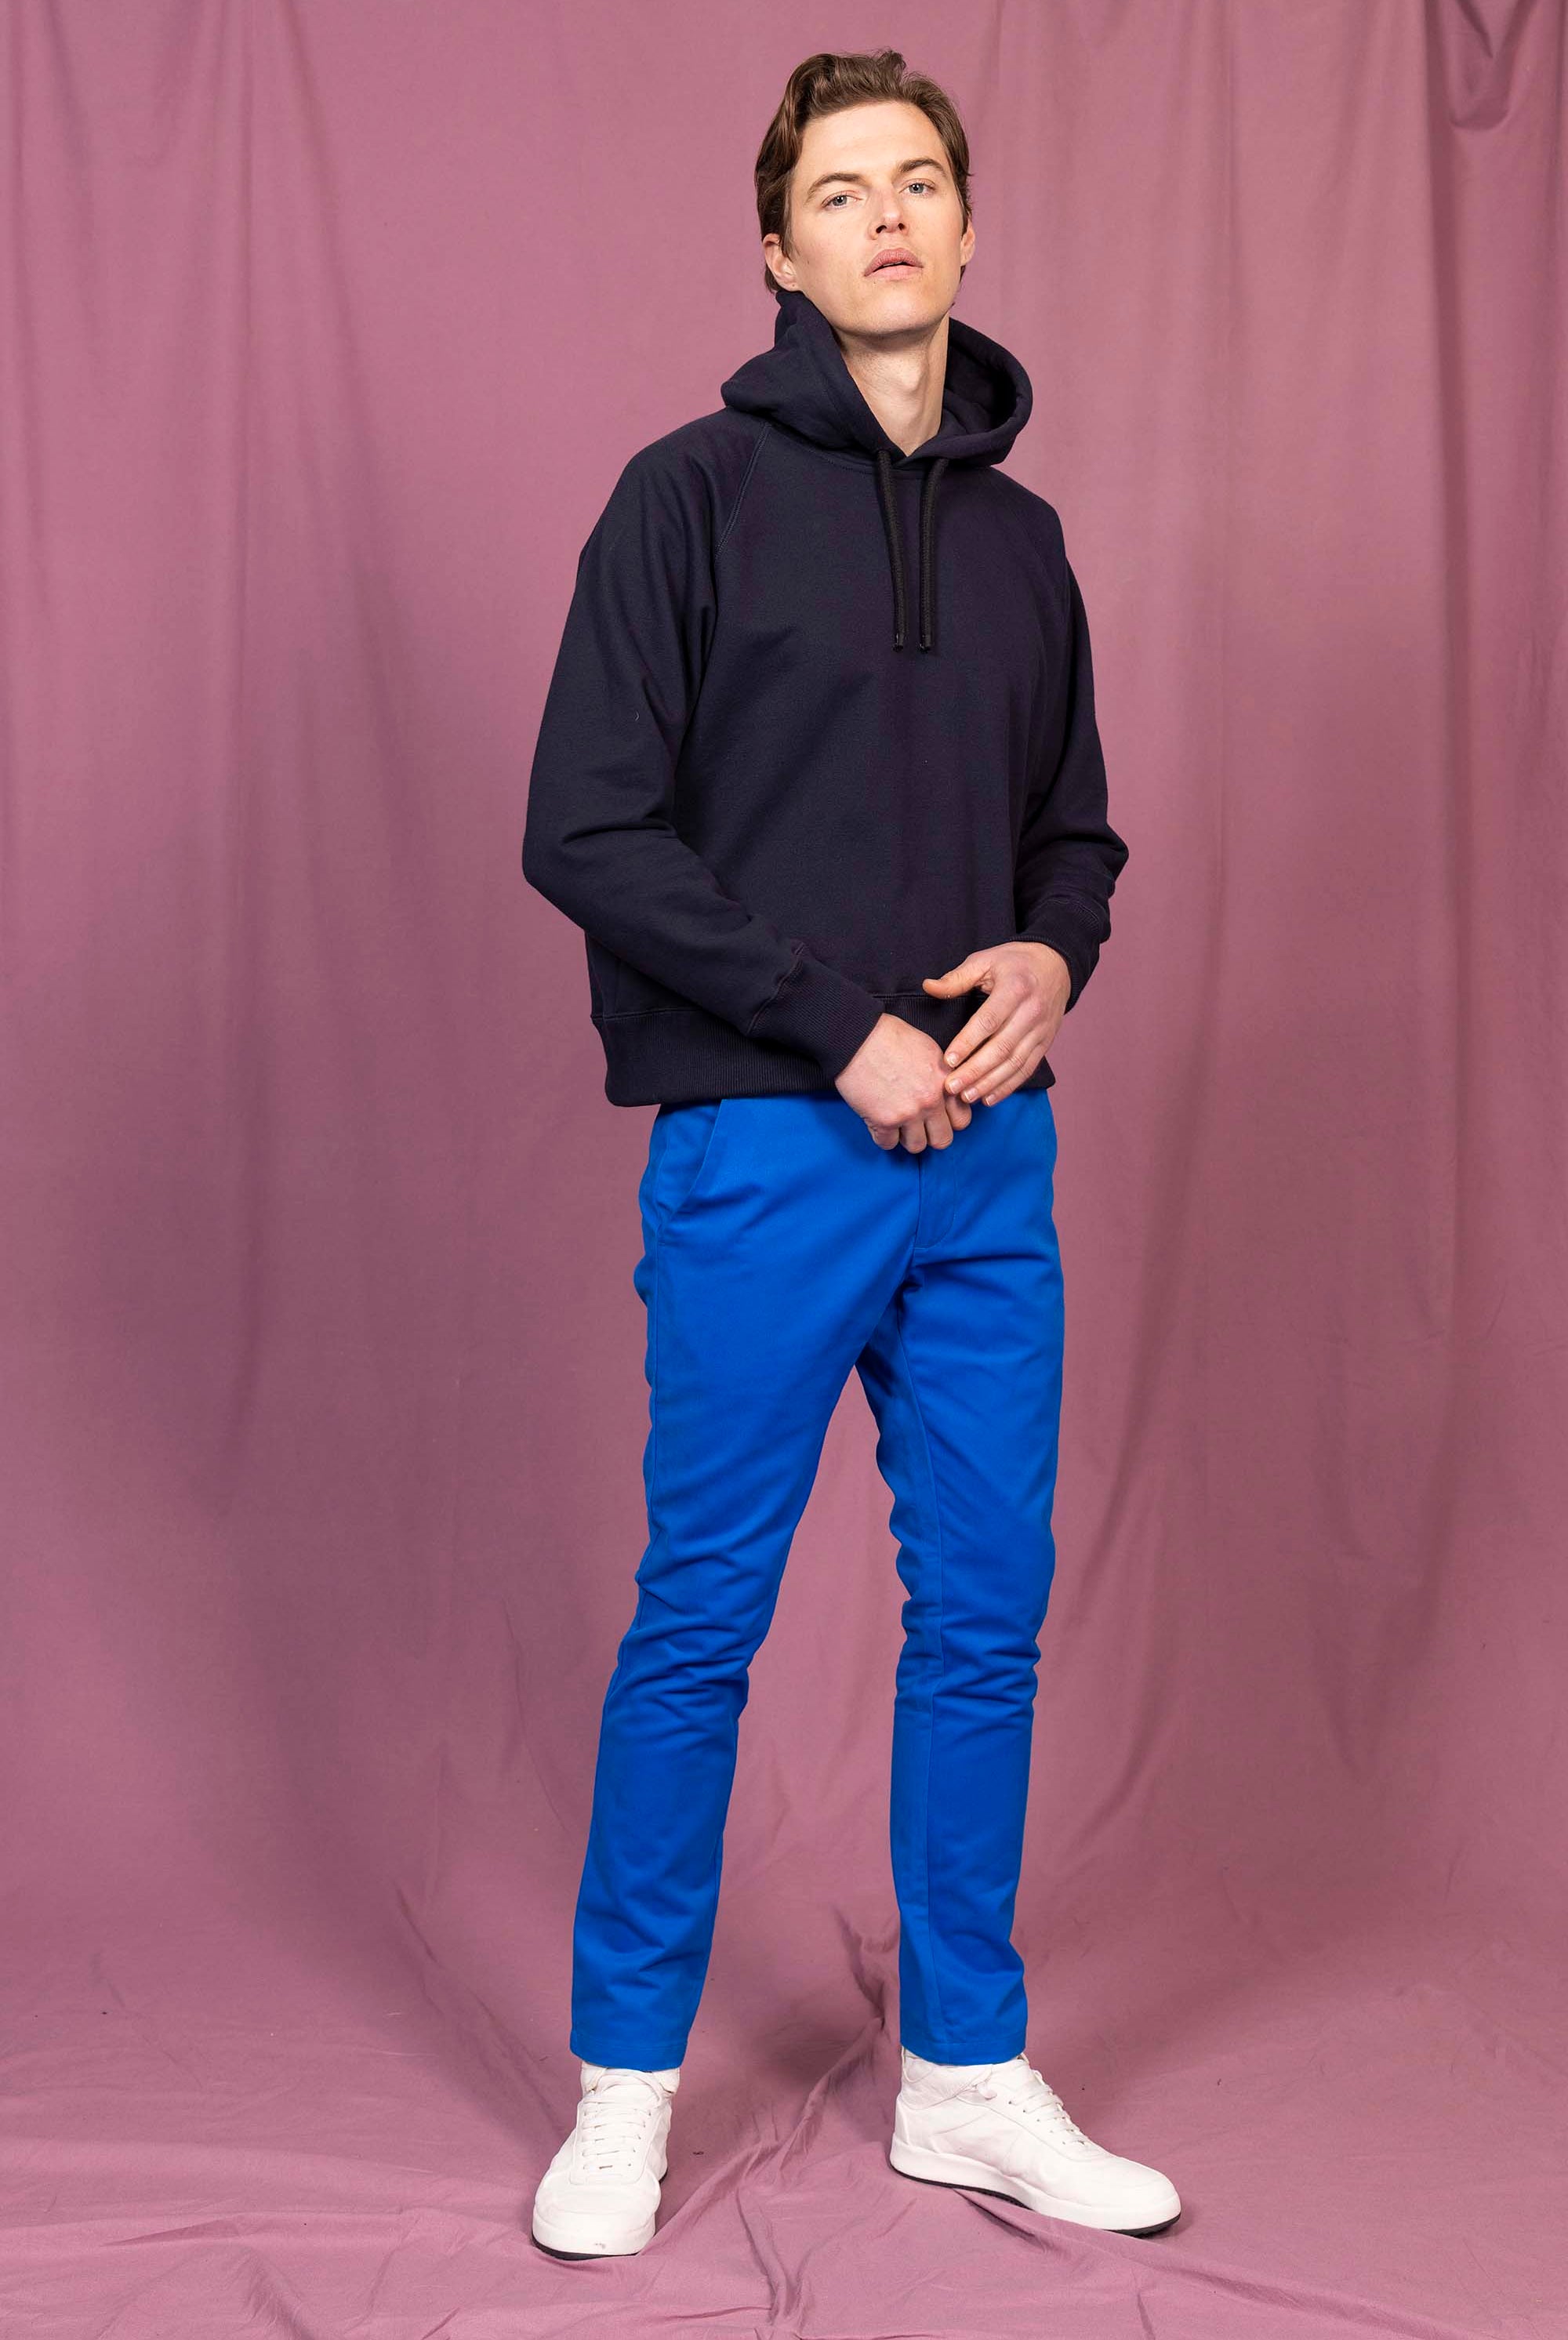 Sweatshirt Elba Bleu Marine sweatshirts haut de gamme en imprimés